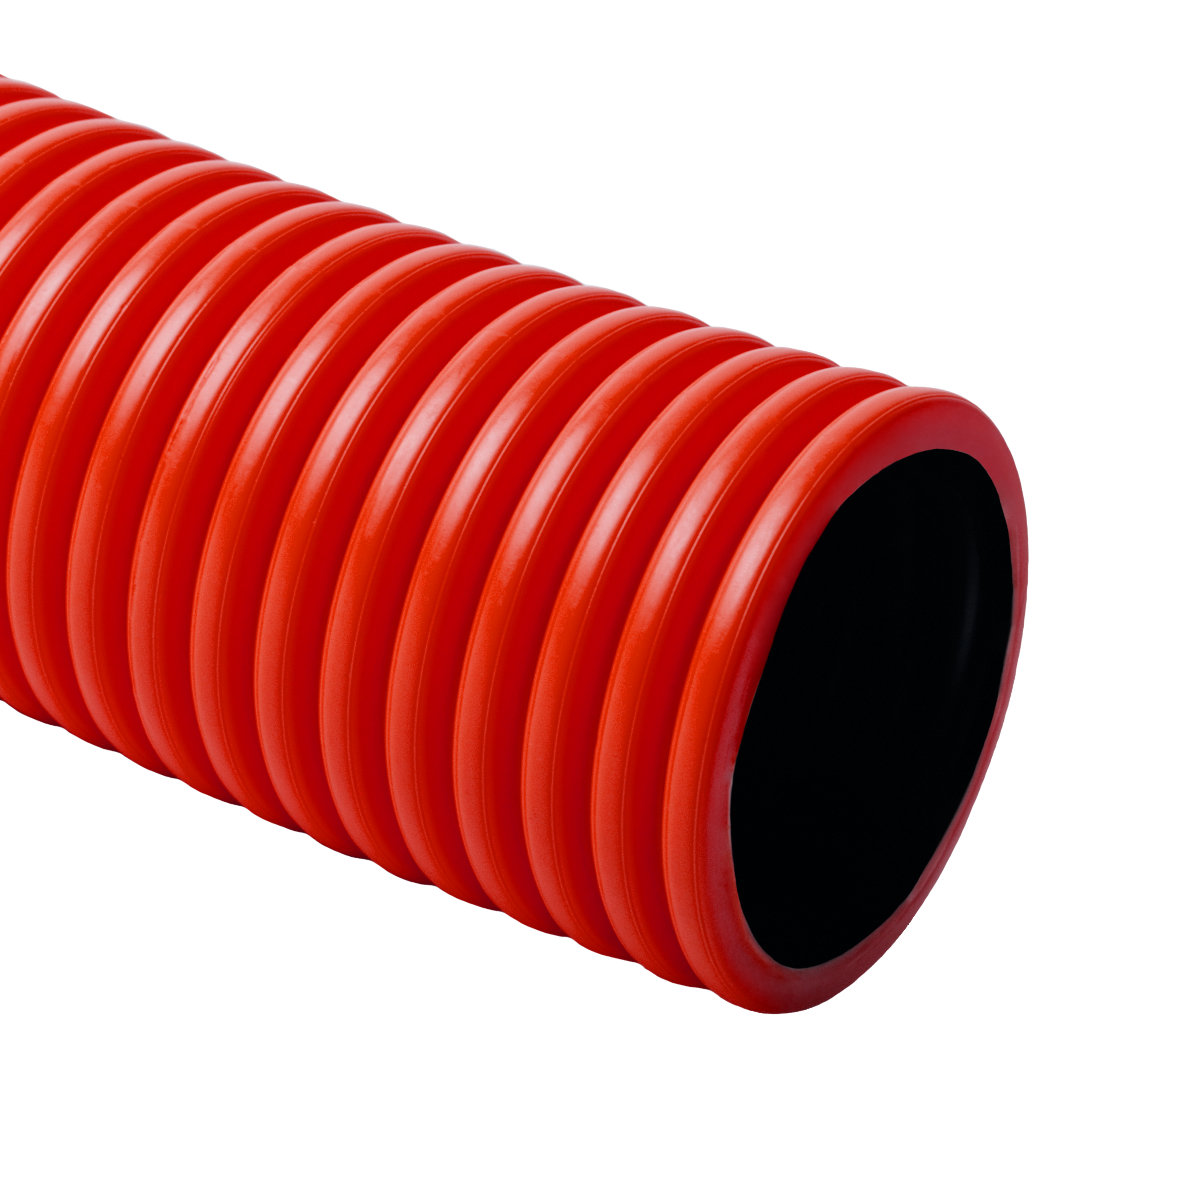 Gégecső D160 kopoflex+behúzó piros kétköpenyű